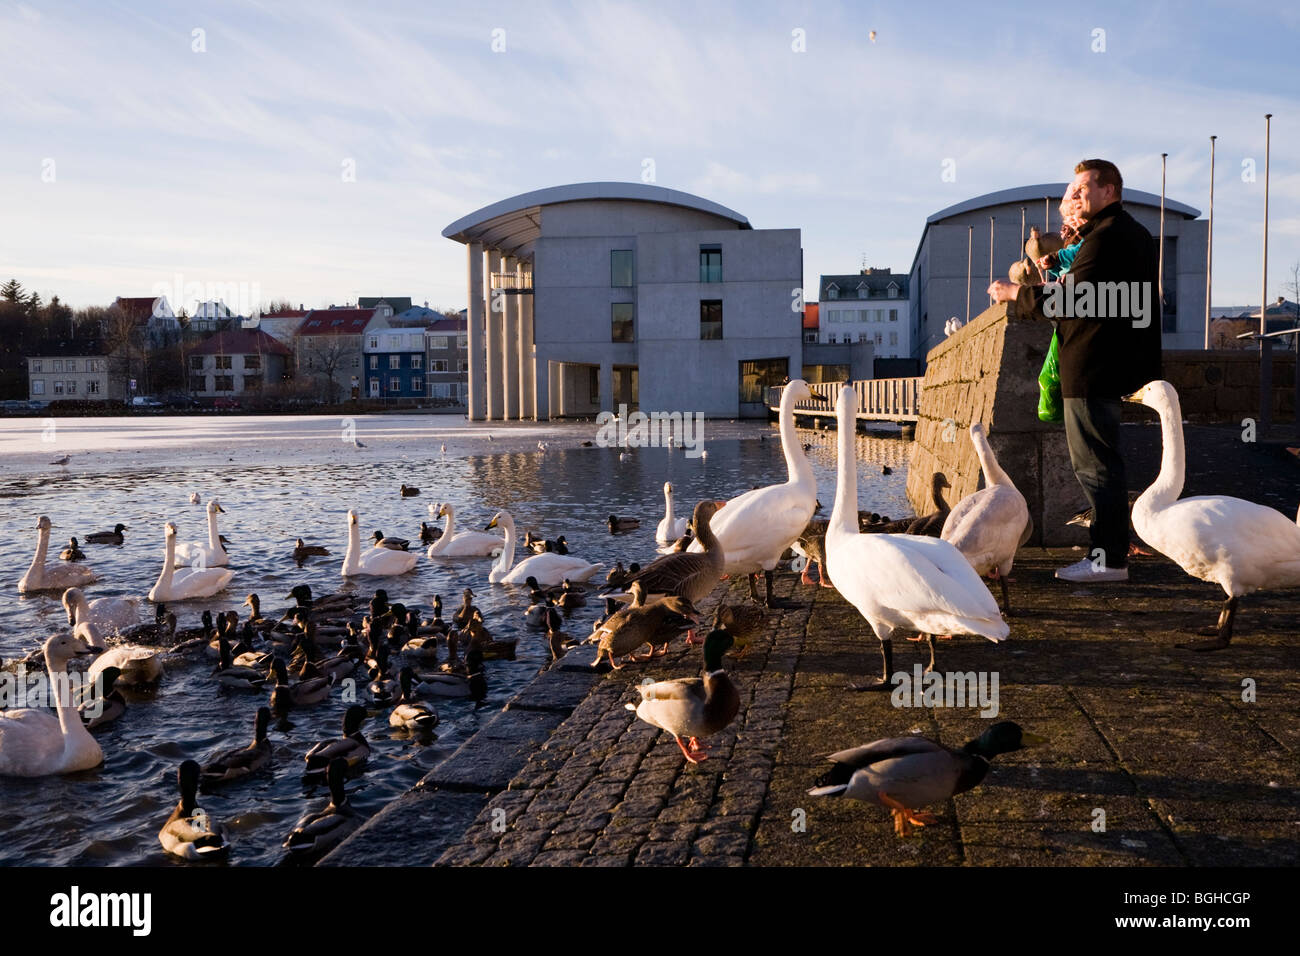 Père et fille nourrir les oiseaux sur une après-midi ensoleillée d'automne. Le centre-ville de Reykjavik, Islande. Banque D'Images